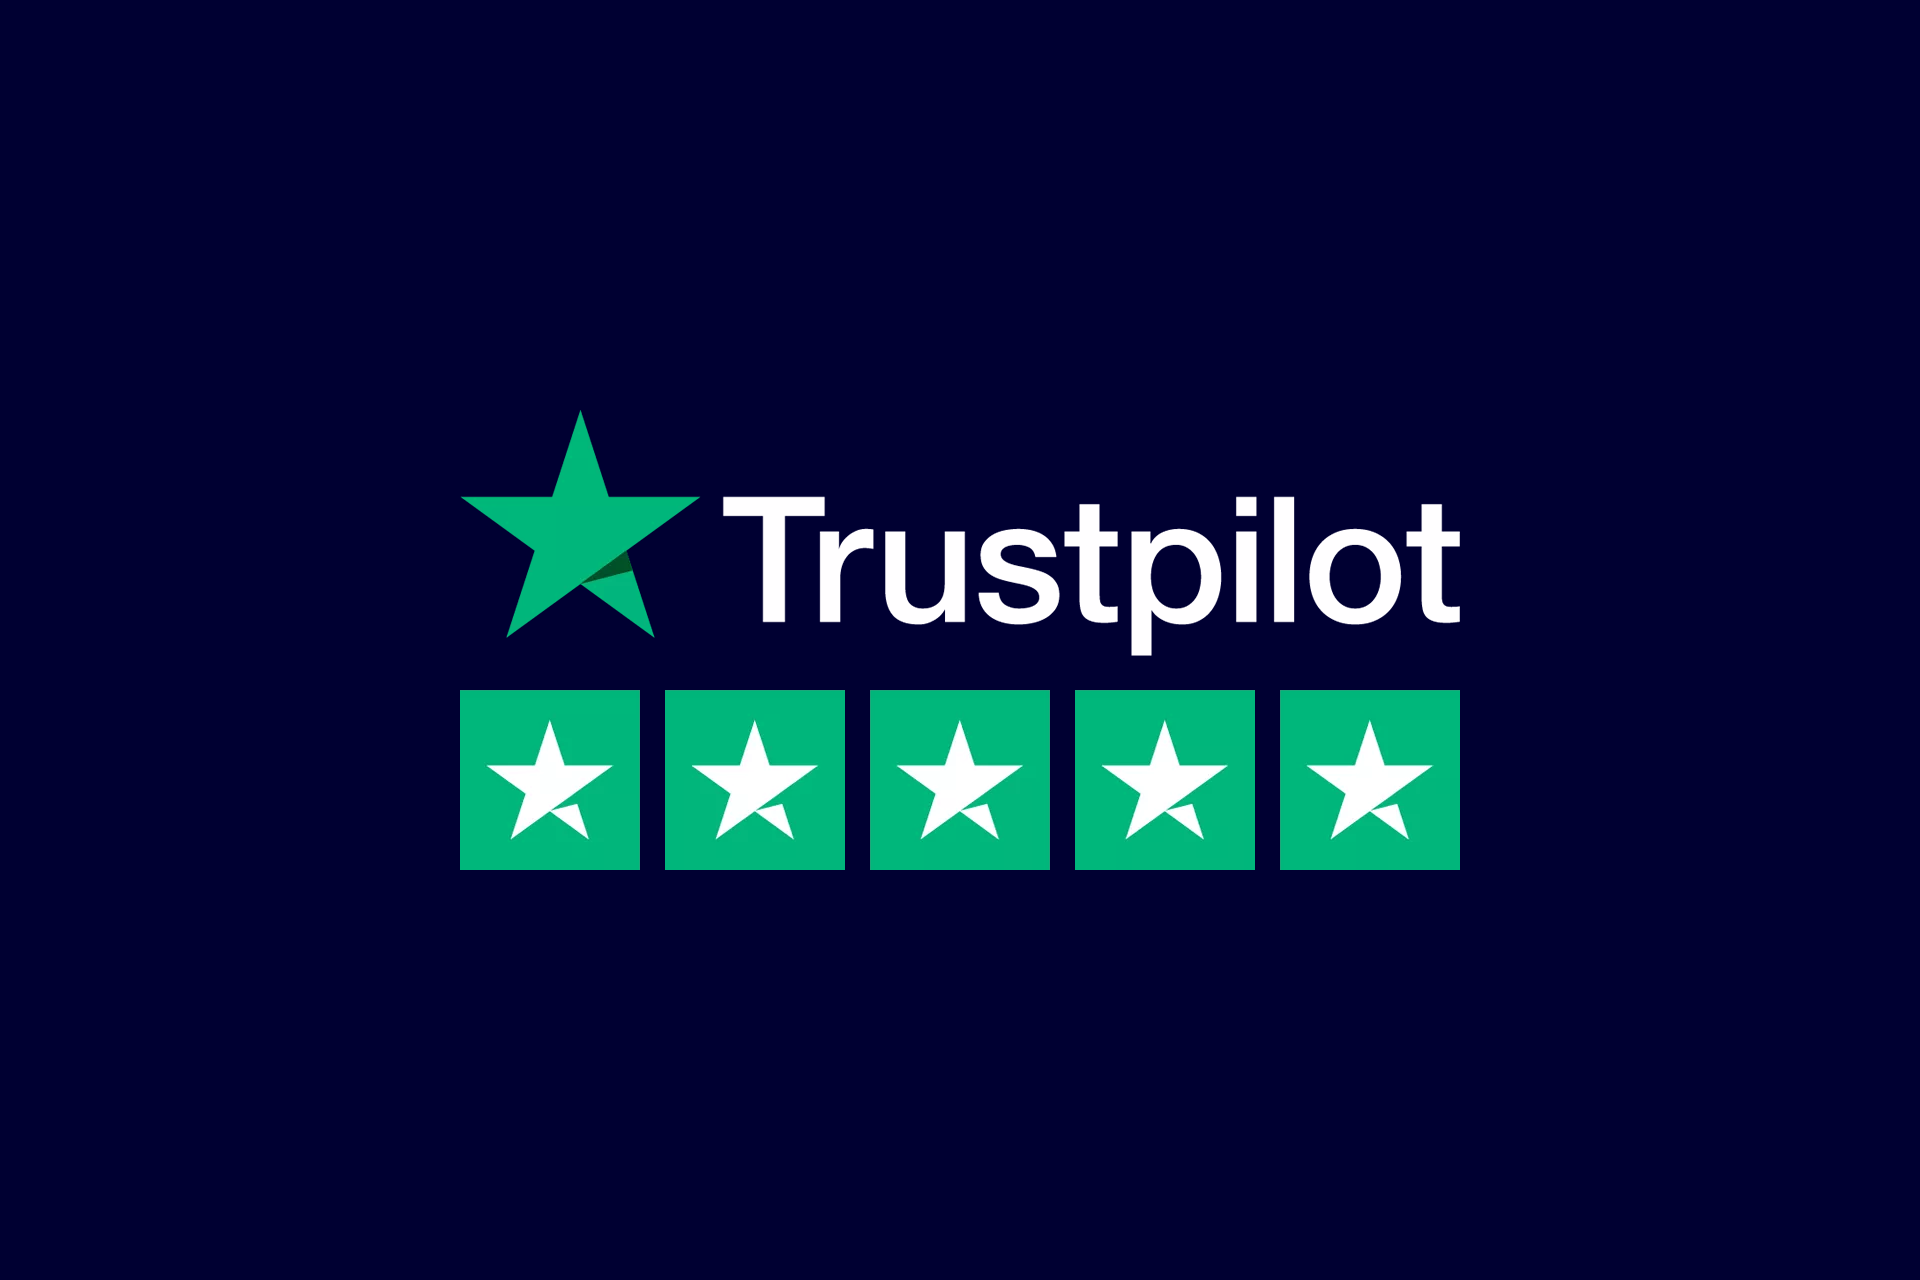 How to get Trustpilot reviews